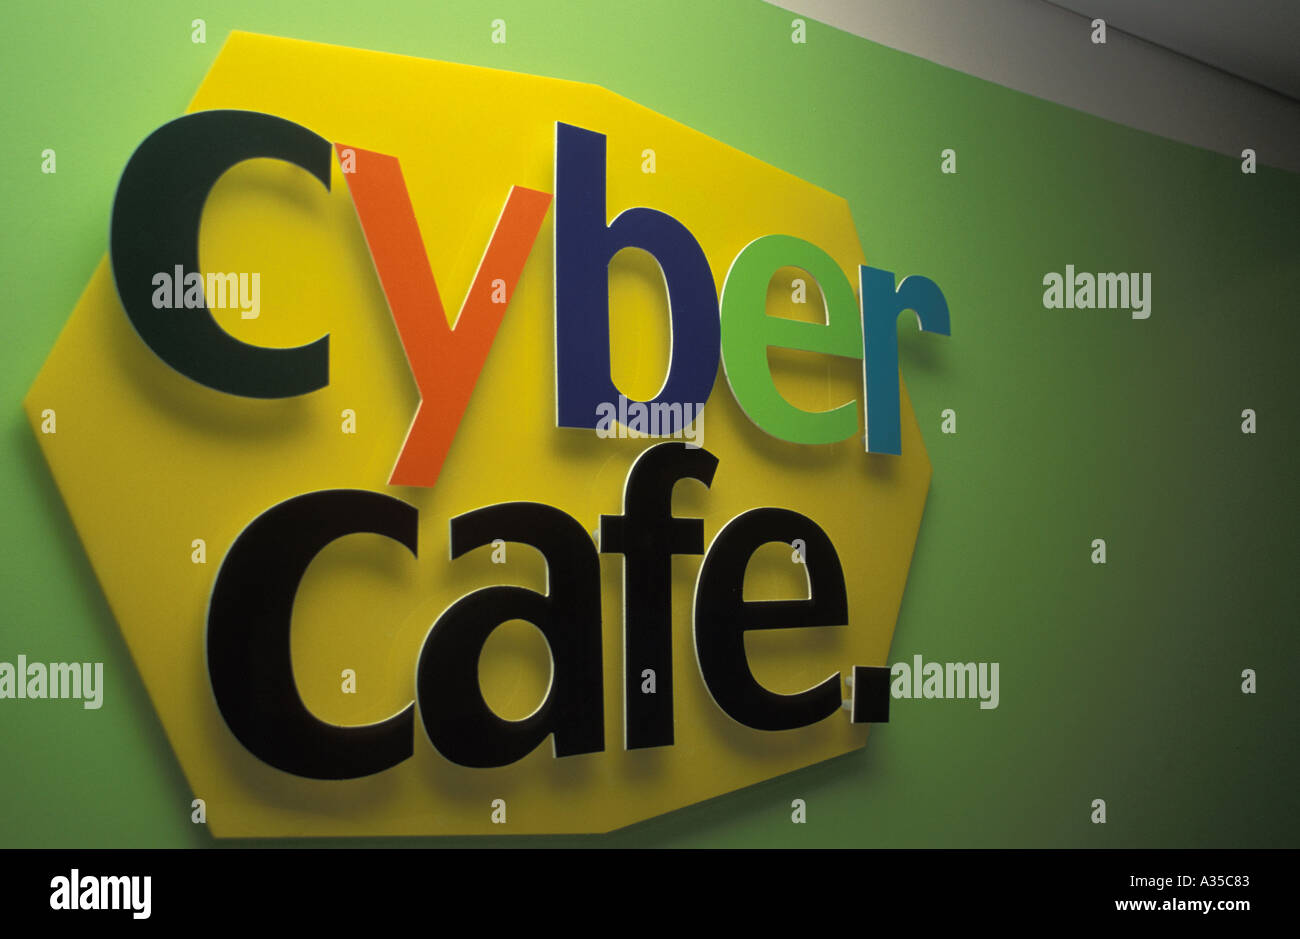 Zeichen Cyber Cafe Stockfoto